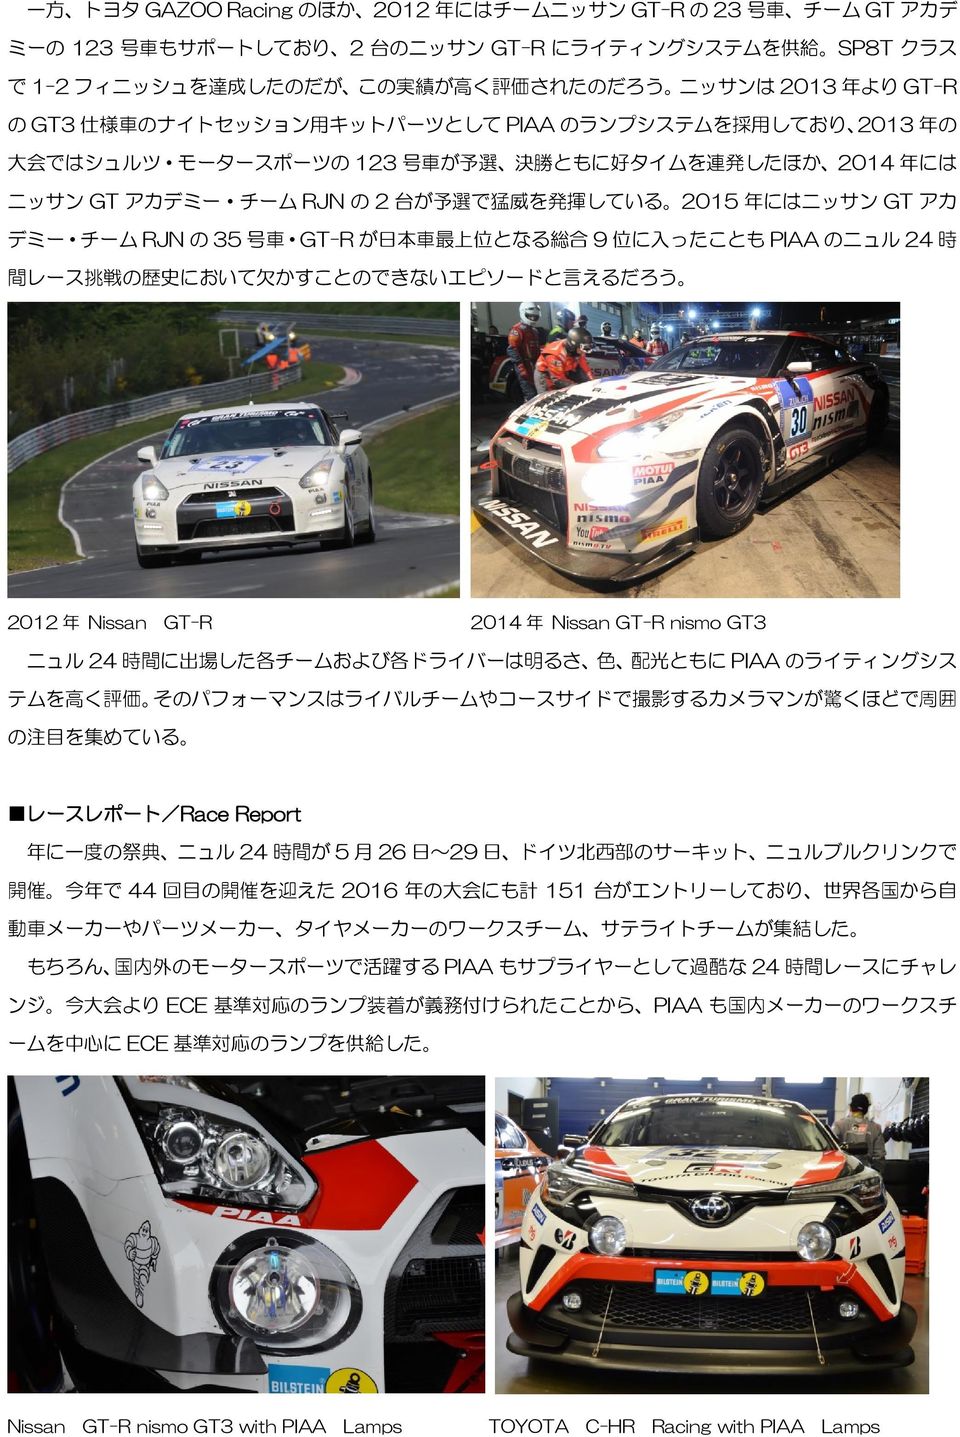 にはニッサン GT アカ デミー チーム RJN の 35 号 車 GT-R が 日 本 車 最 上 位 となる 総 合 9 位 に 入 ったことも PIAA のニュル 24 時 間 レース 挑 戦 の 歴 史 において 欠 かすことのできないエピソードと 言 えるだろう 2012 年 Nissan GT-R 2014 年 Nissan GT-R nismo GT3 ニュル 24 時 間 に 出